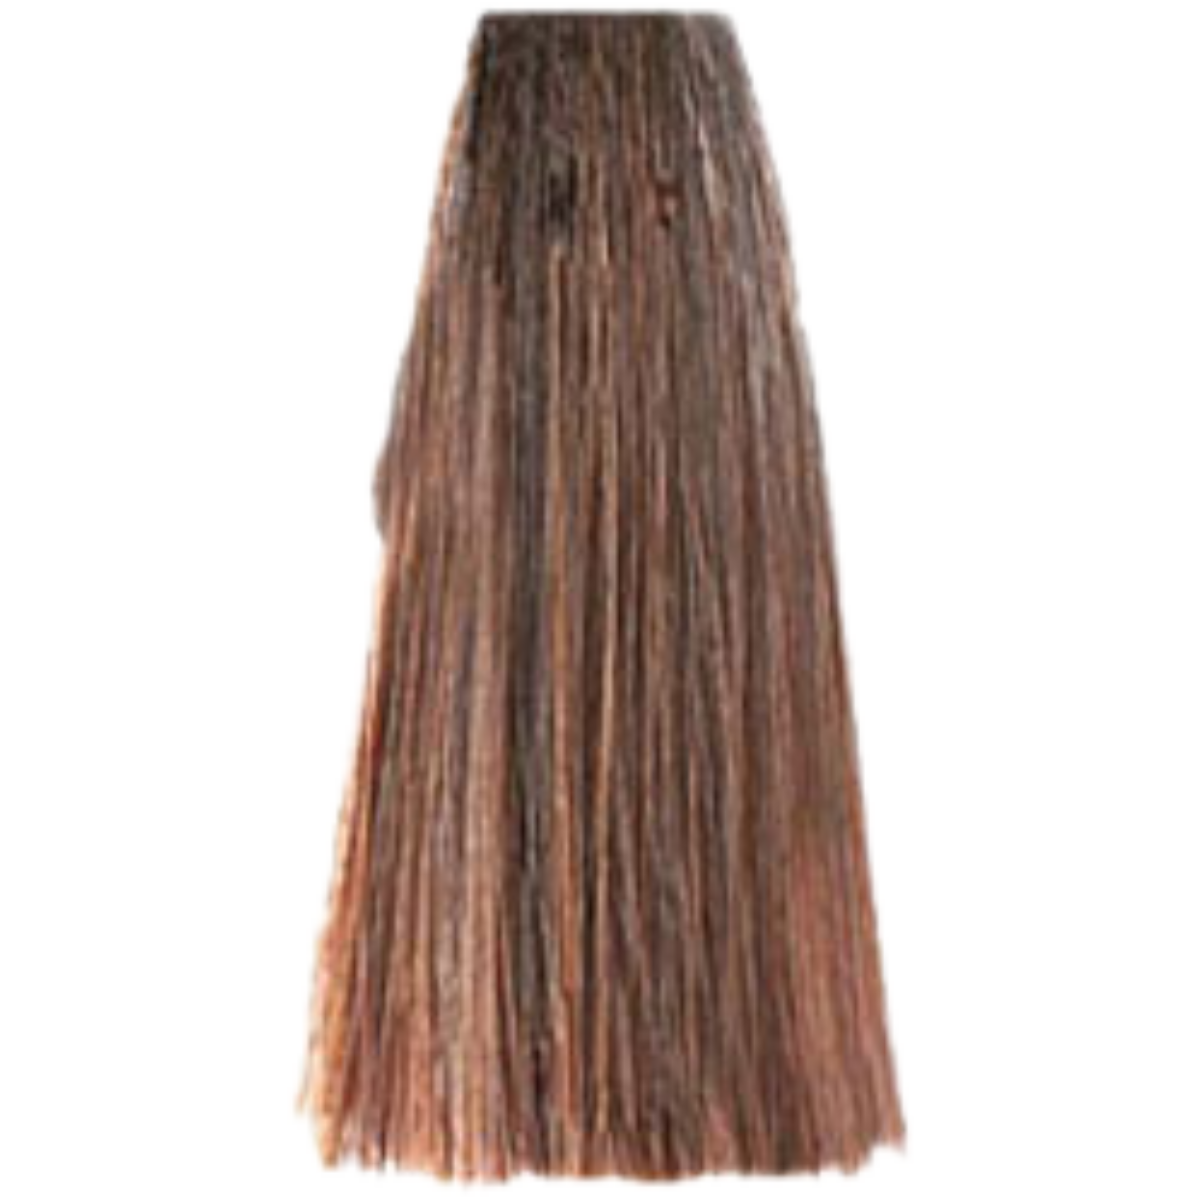 צבע שיער בסיס 8.00 LIGHT INTENSE BLONDE פארמויטה FarmaVita צבע לשיער 100 גרם